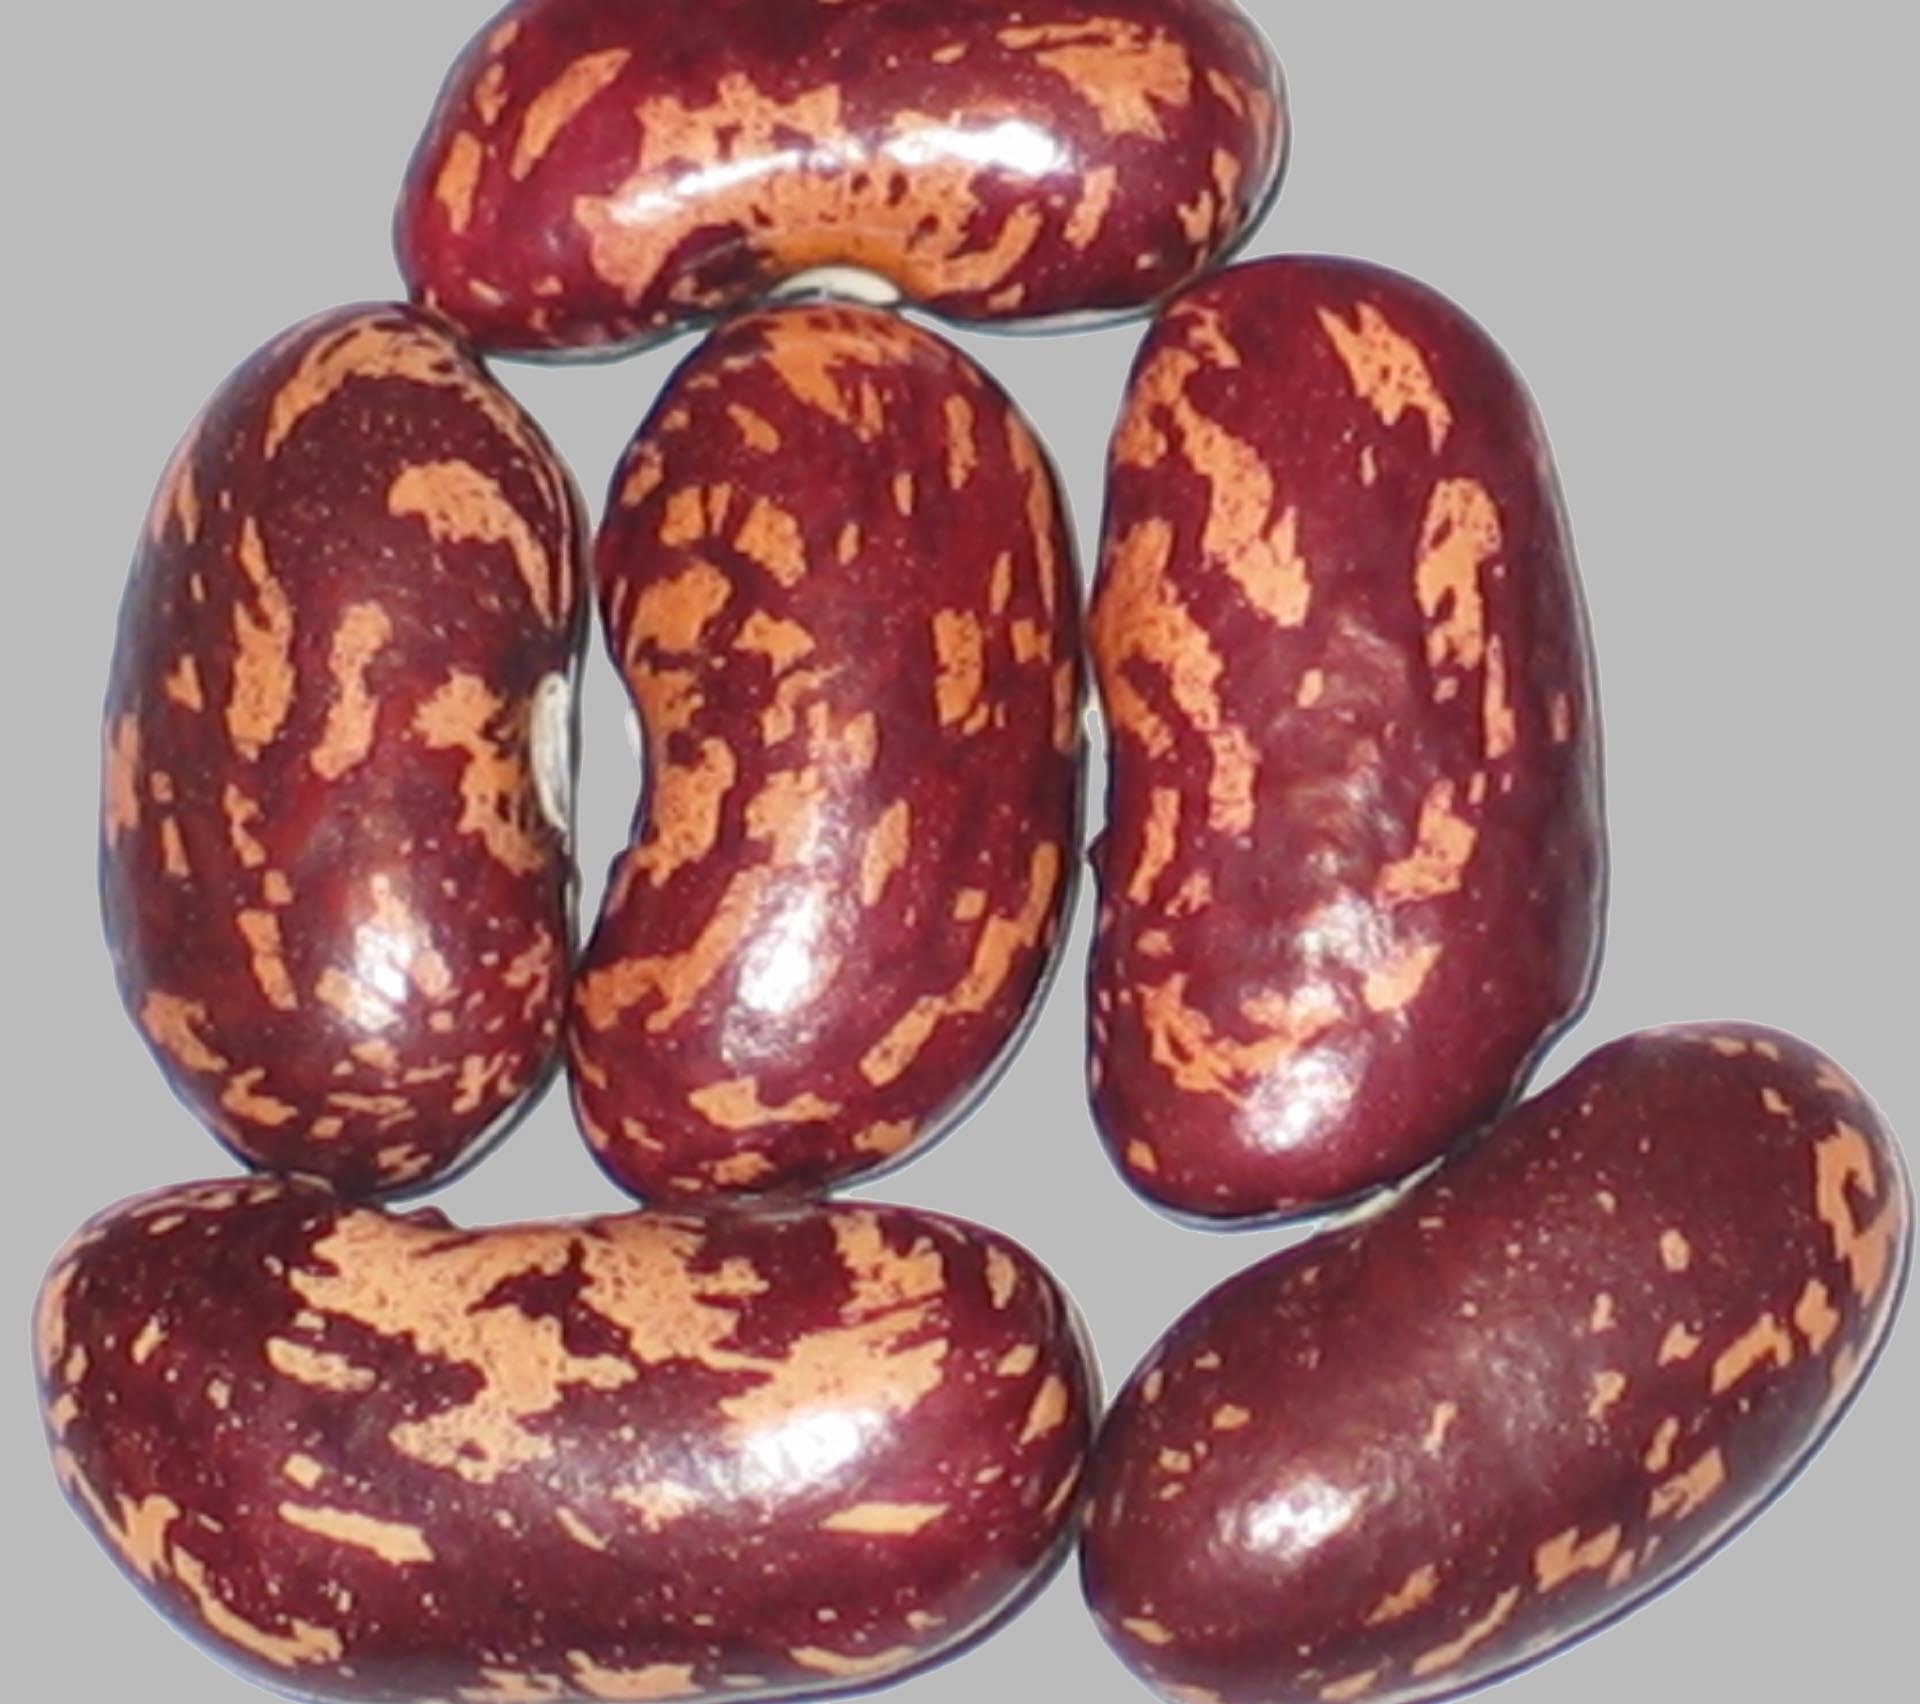 image of Anakin Kuvallii Giant beans